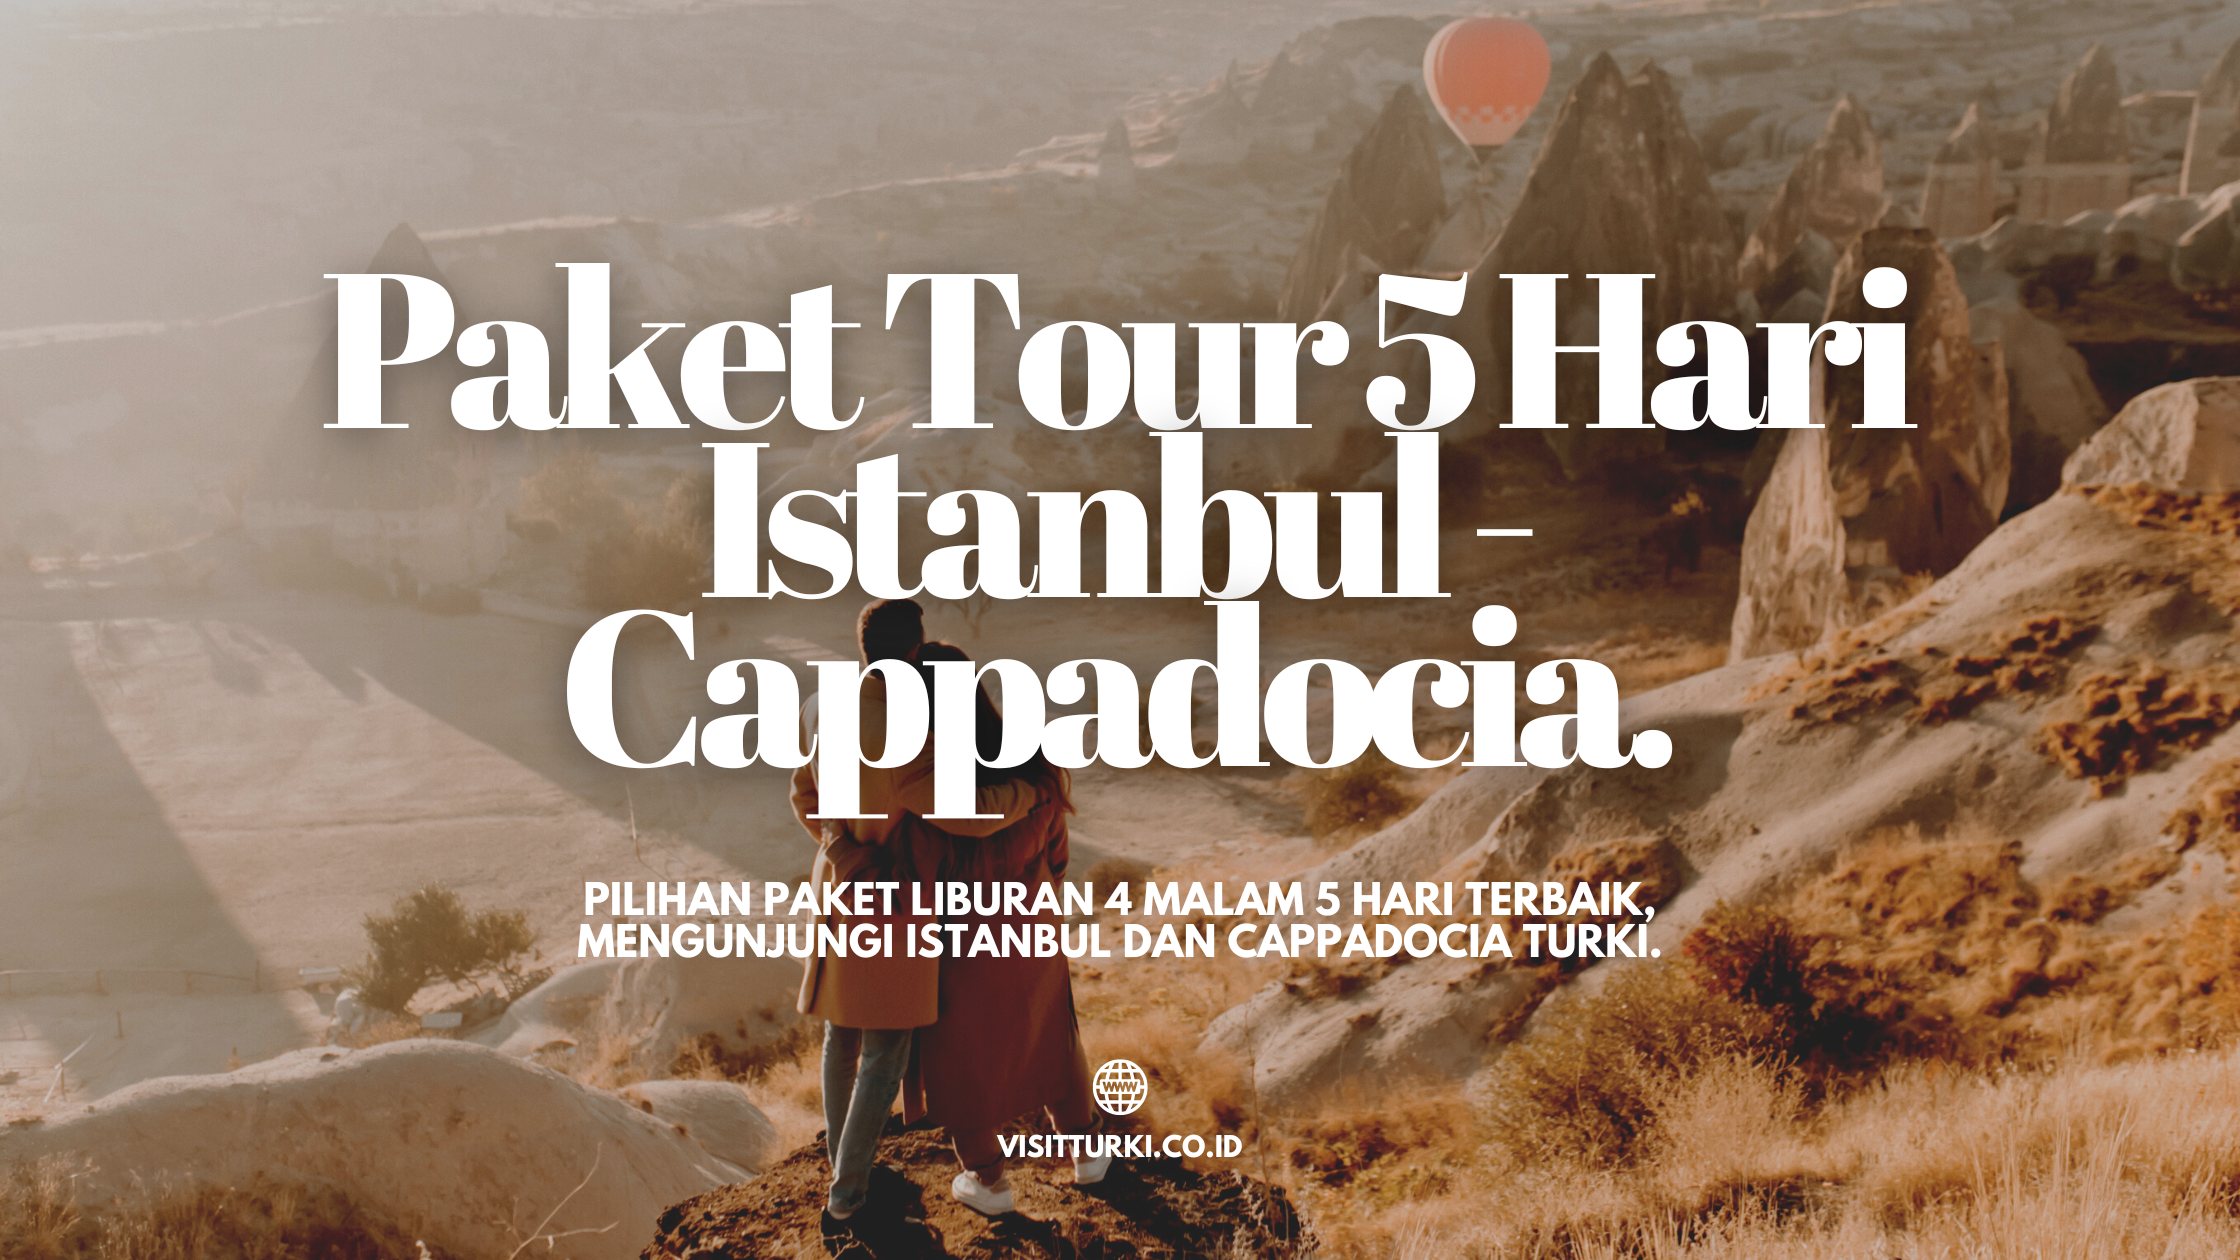 harga paket tour ke turki 2022